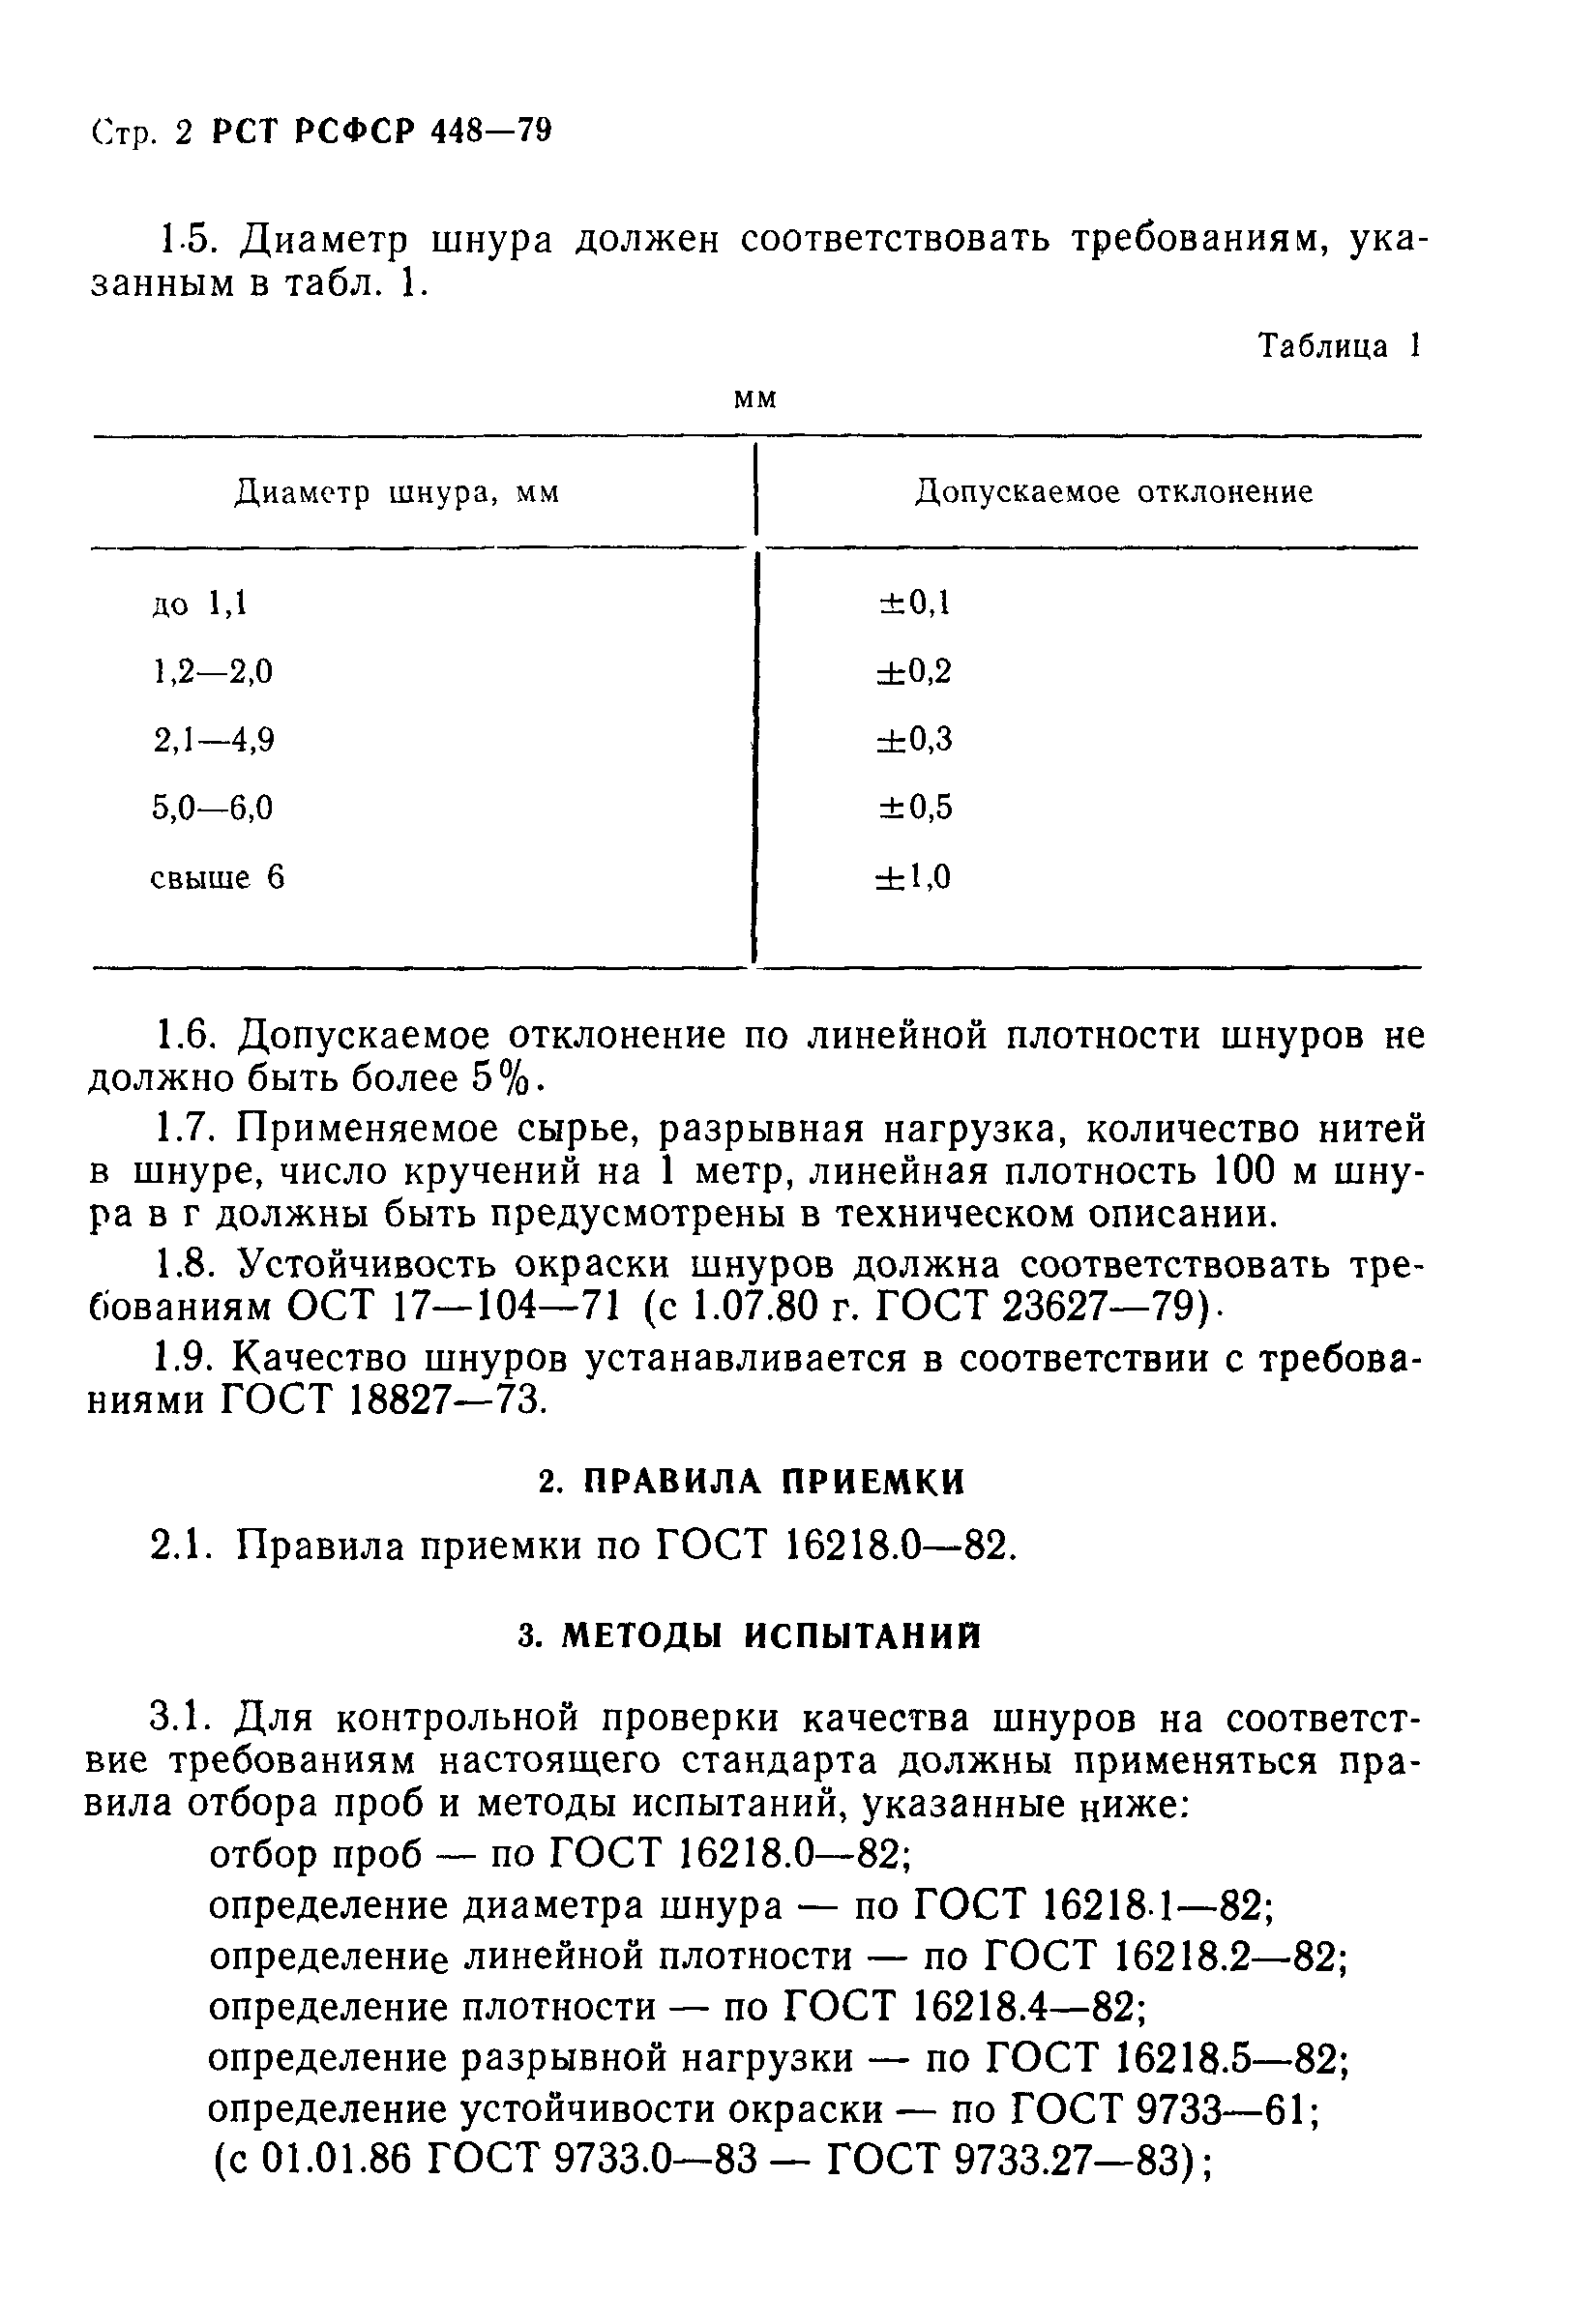 РСТ РСФСР 448-79